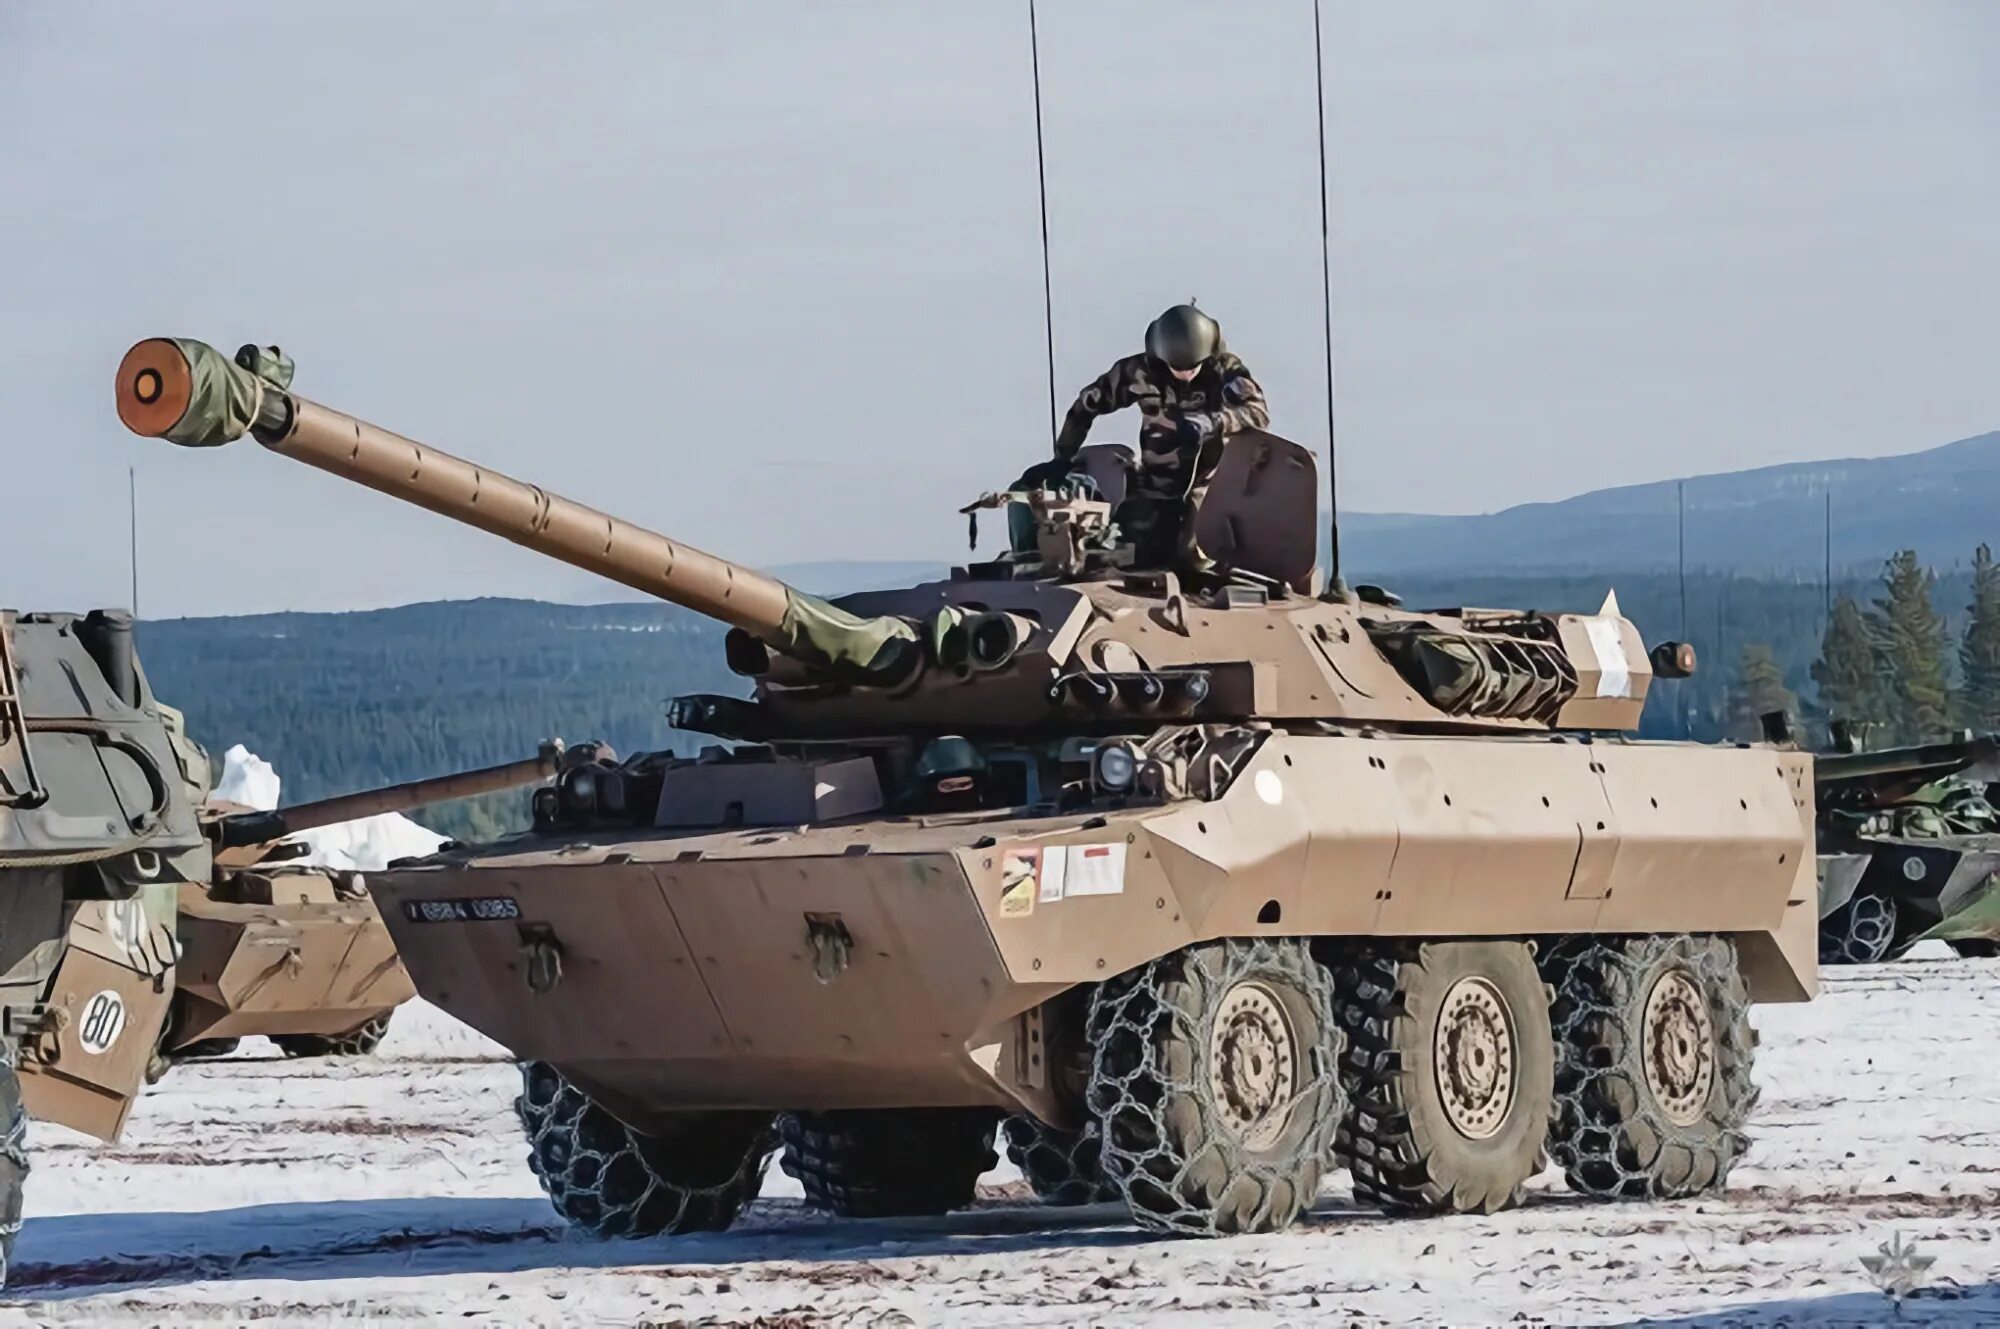 AMX-10rc колесный танк. Колесные AMX-10 RC. Французский колёсный танк AMX-10rc. Танки AMX-10 RC.